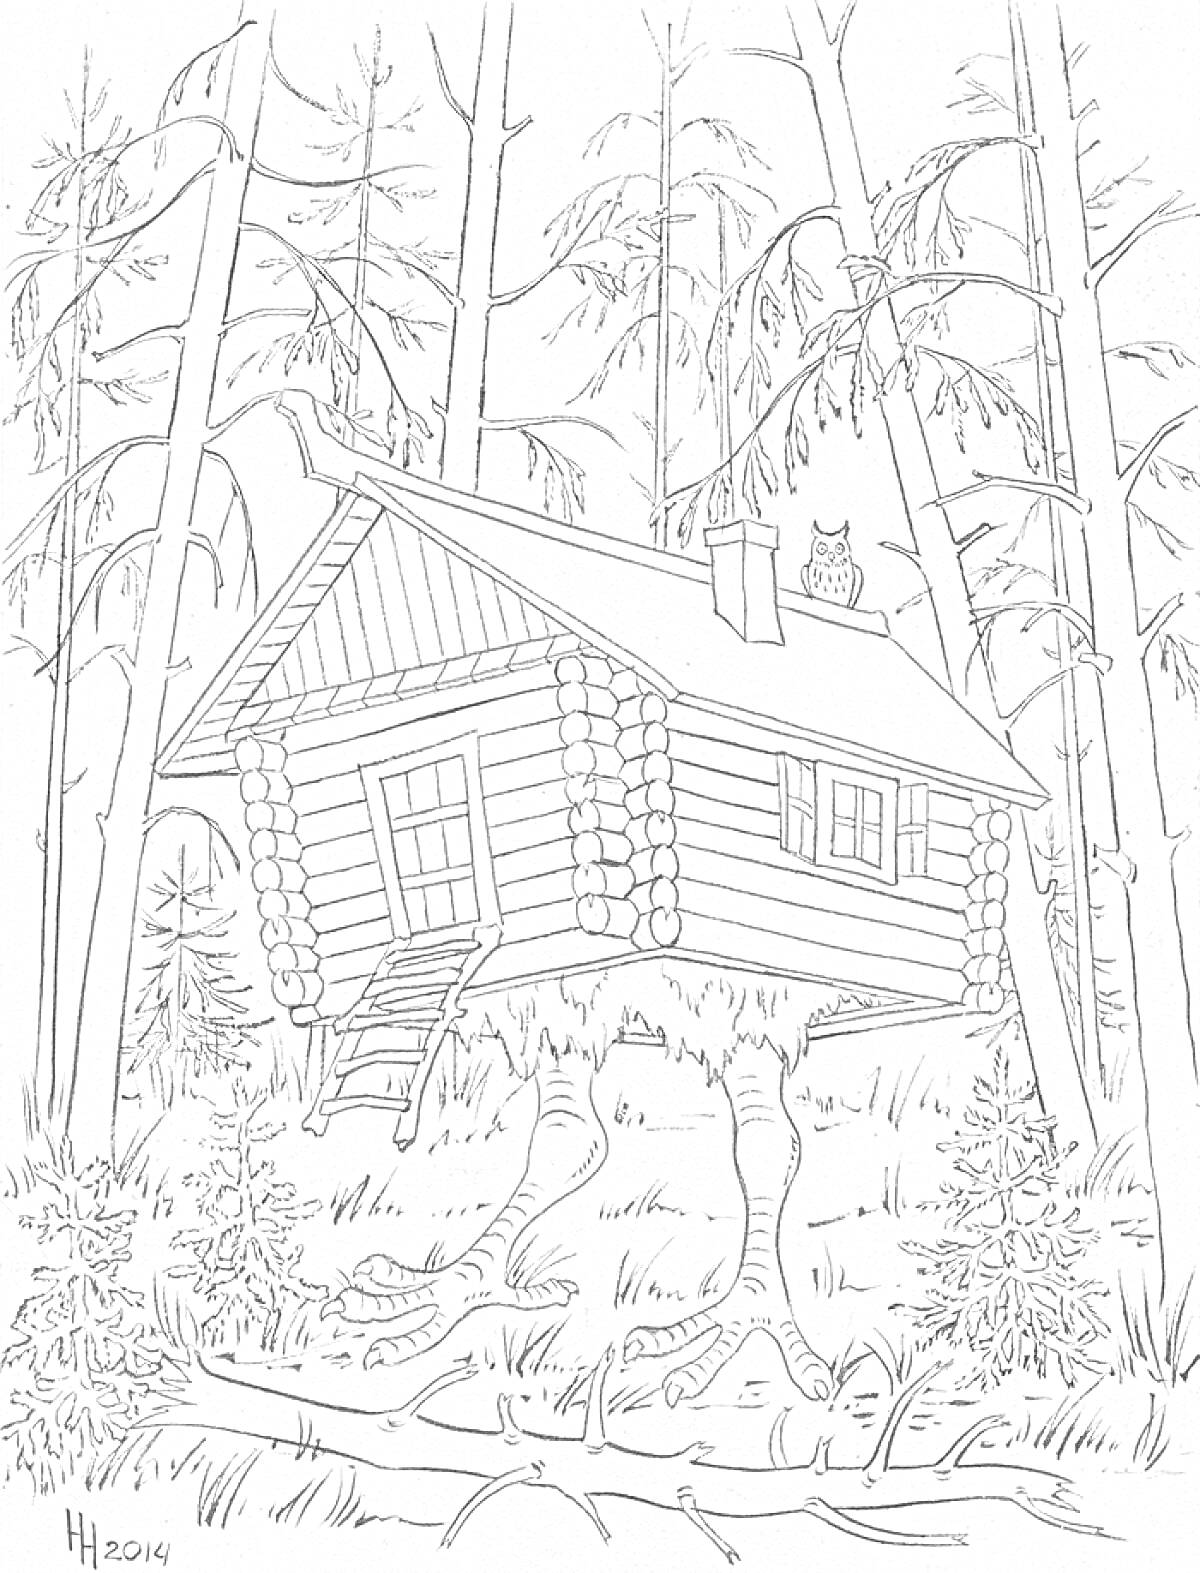 Раскраска Избушка на курьих ножках в лесу с деревьями, совой на крыше и кустами вокруг